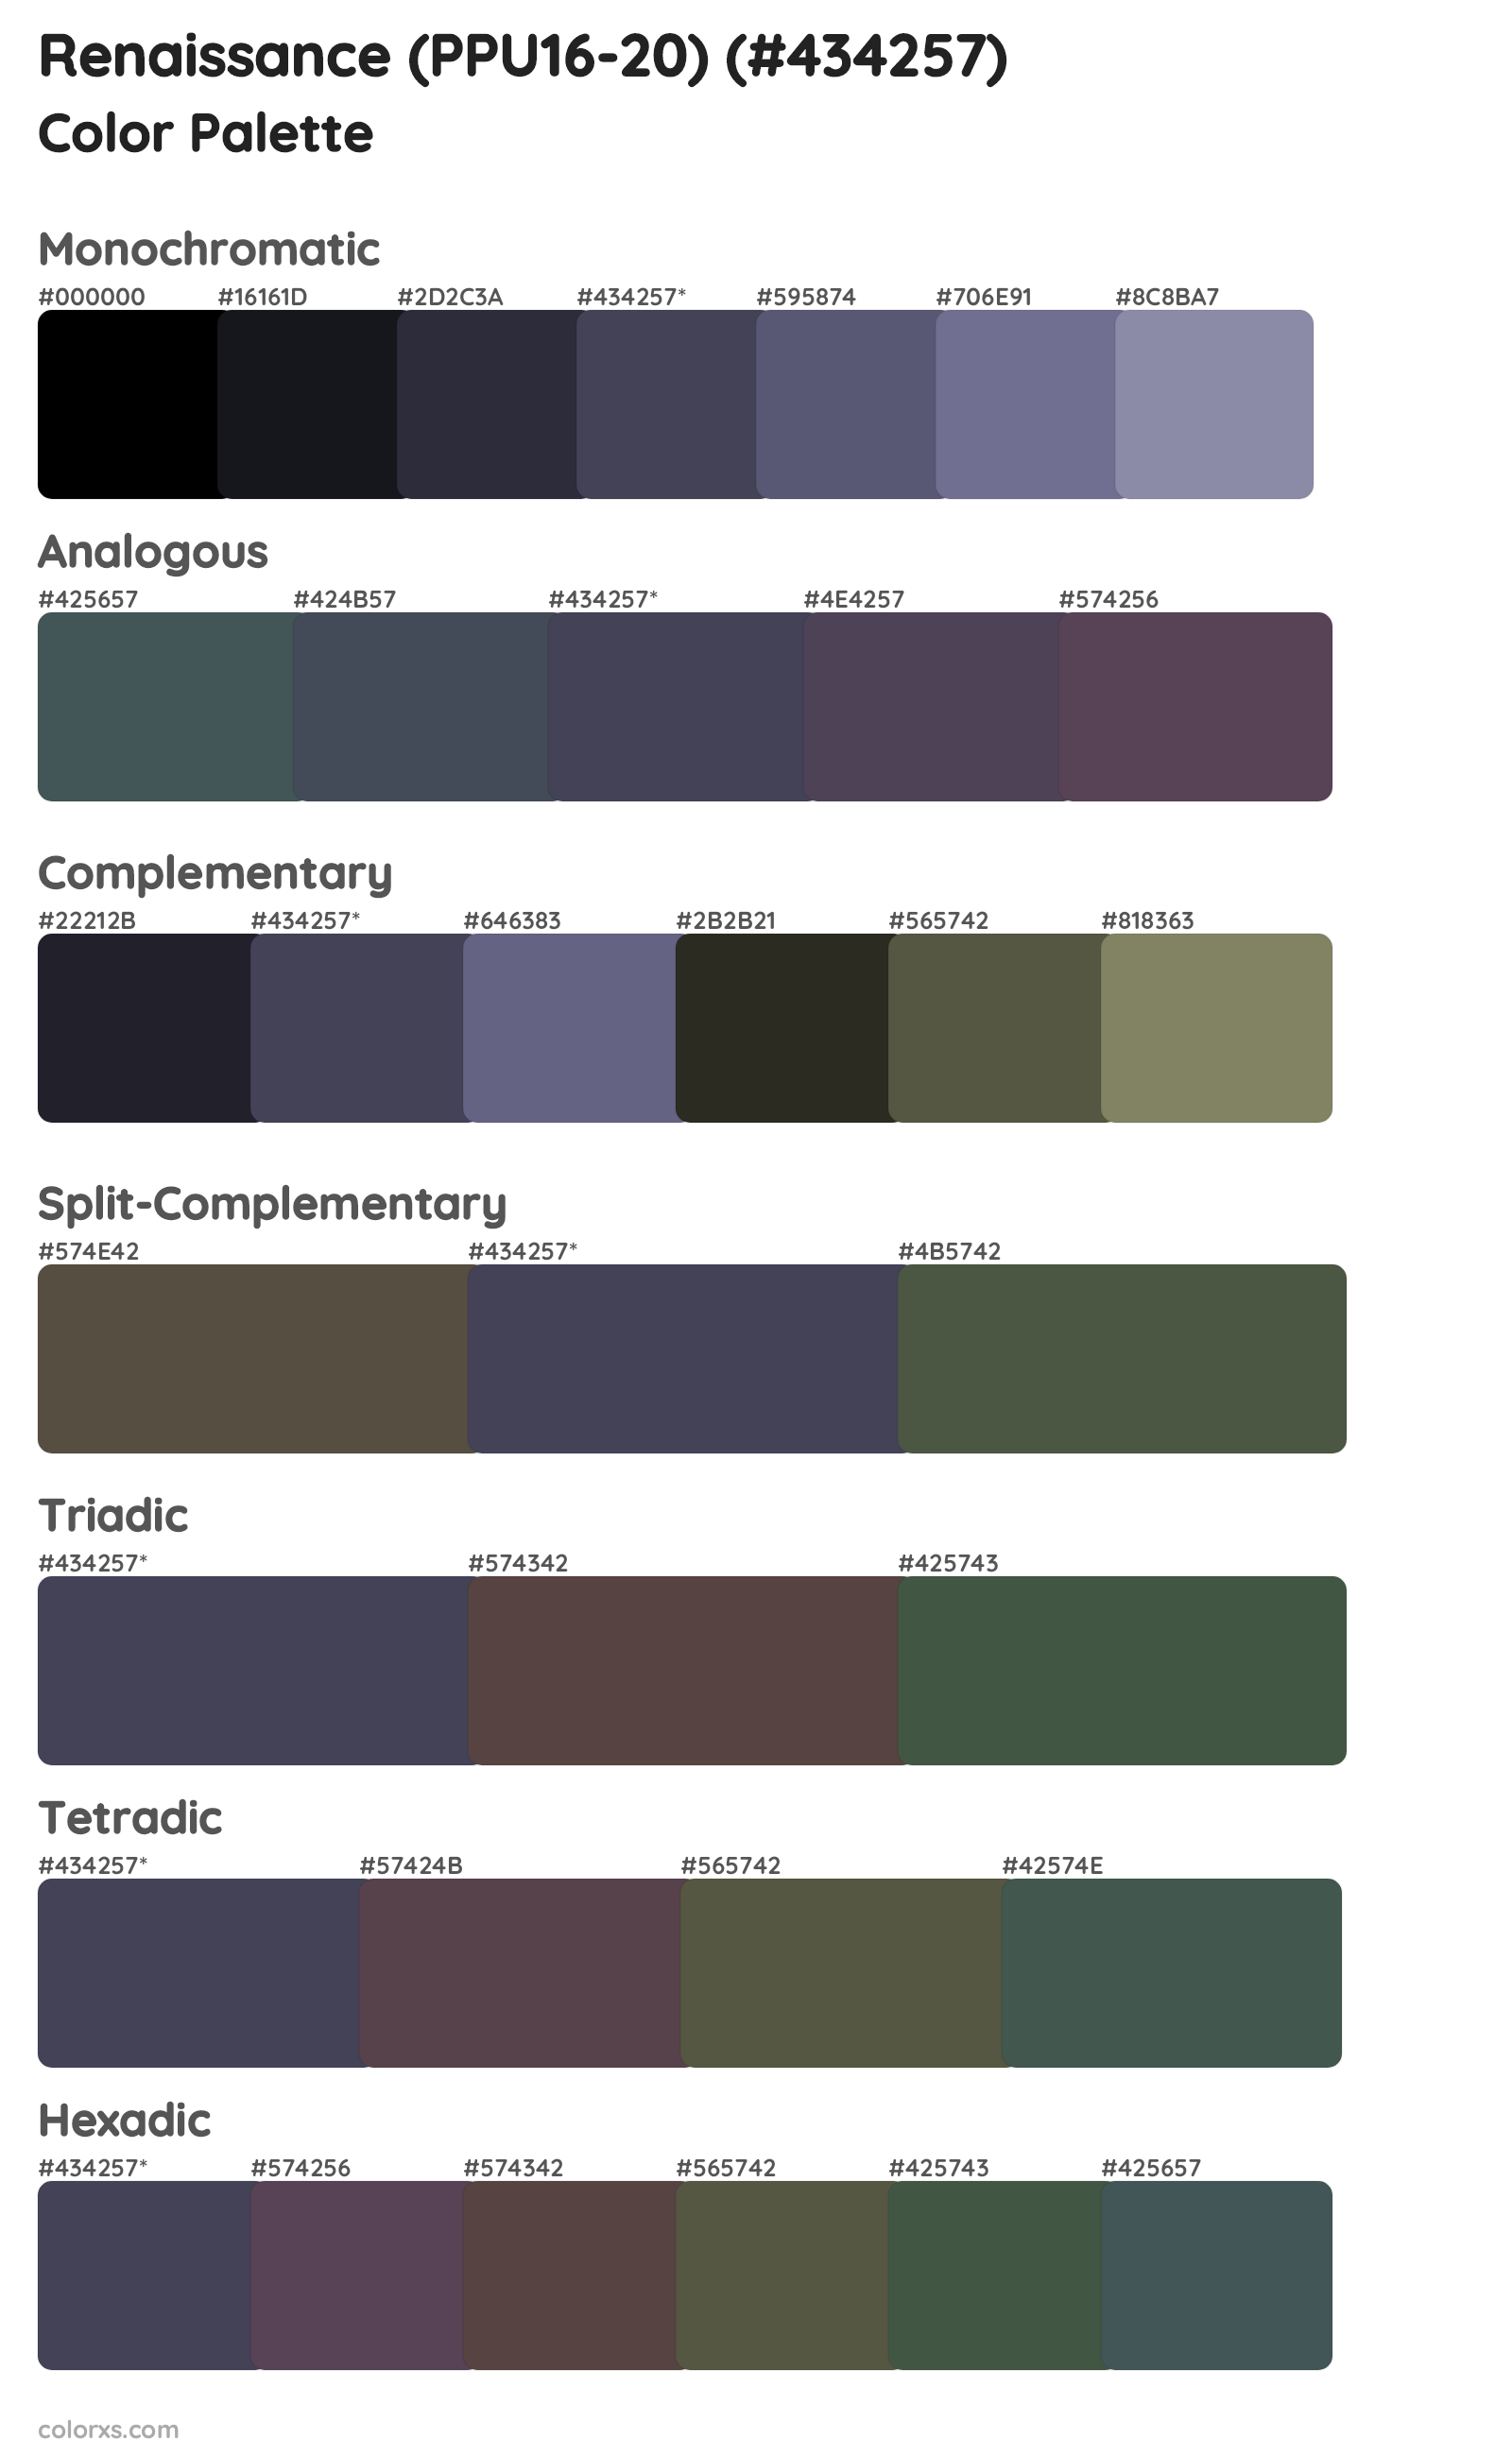 Renaissance (PPU16-20) Color Scheme Palettes